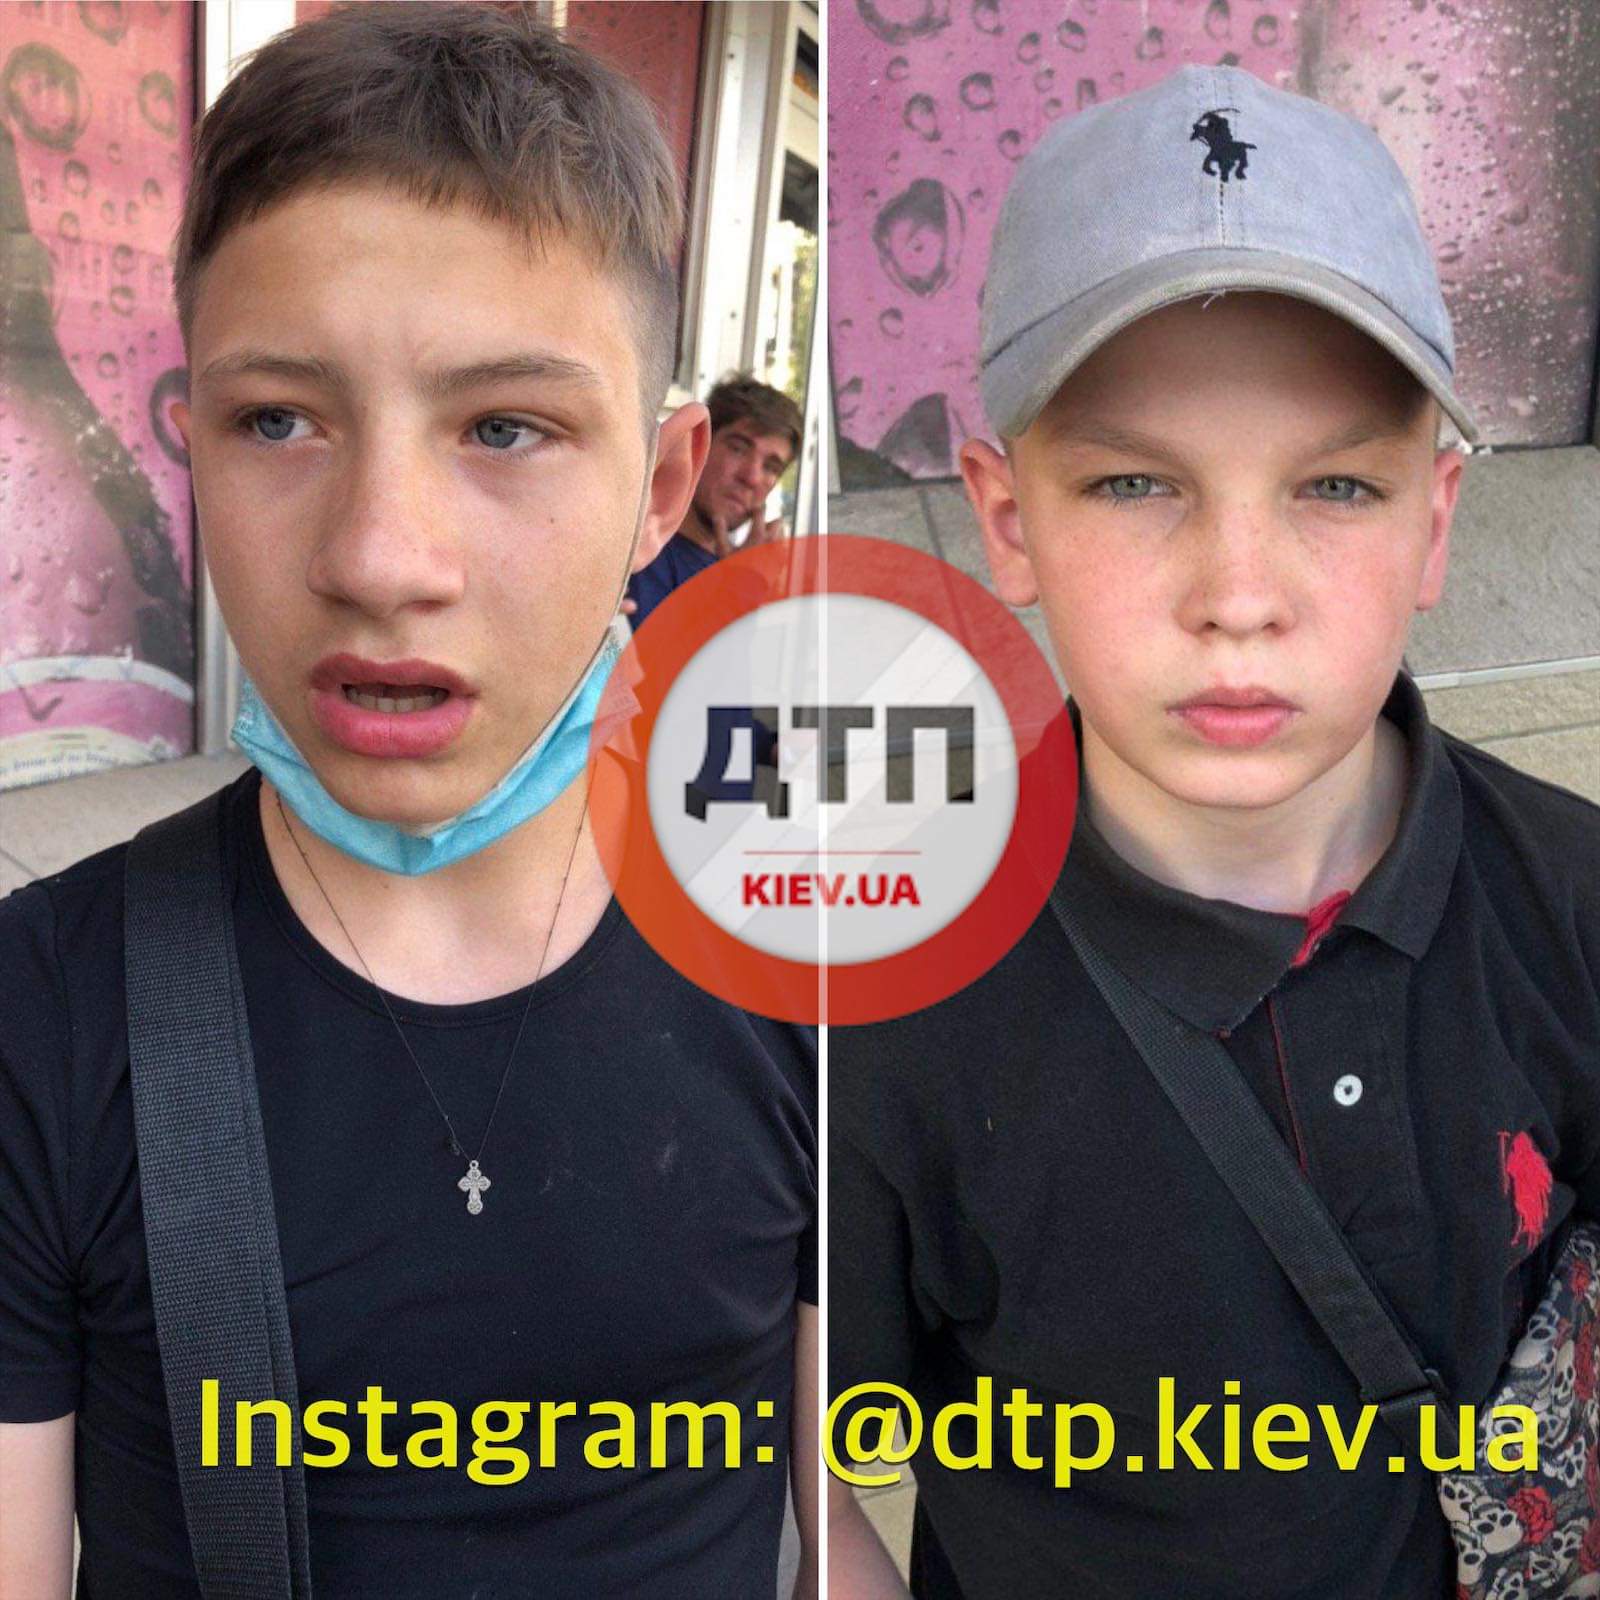 Юные бандиты: в Киеве на Березняках двое подростков своровали мобильный телефон у мальчика и сдали в ломбард